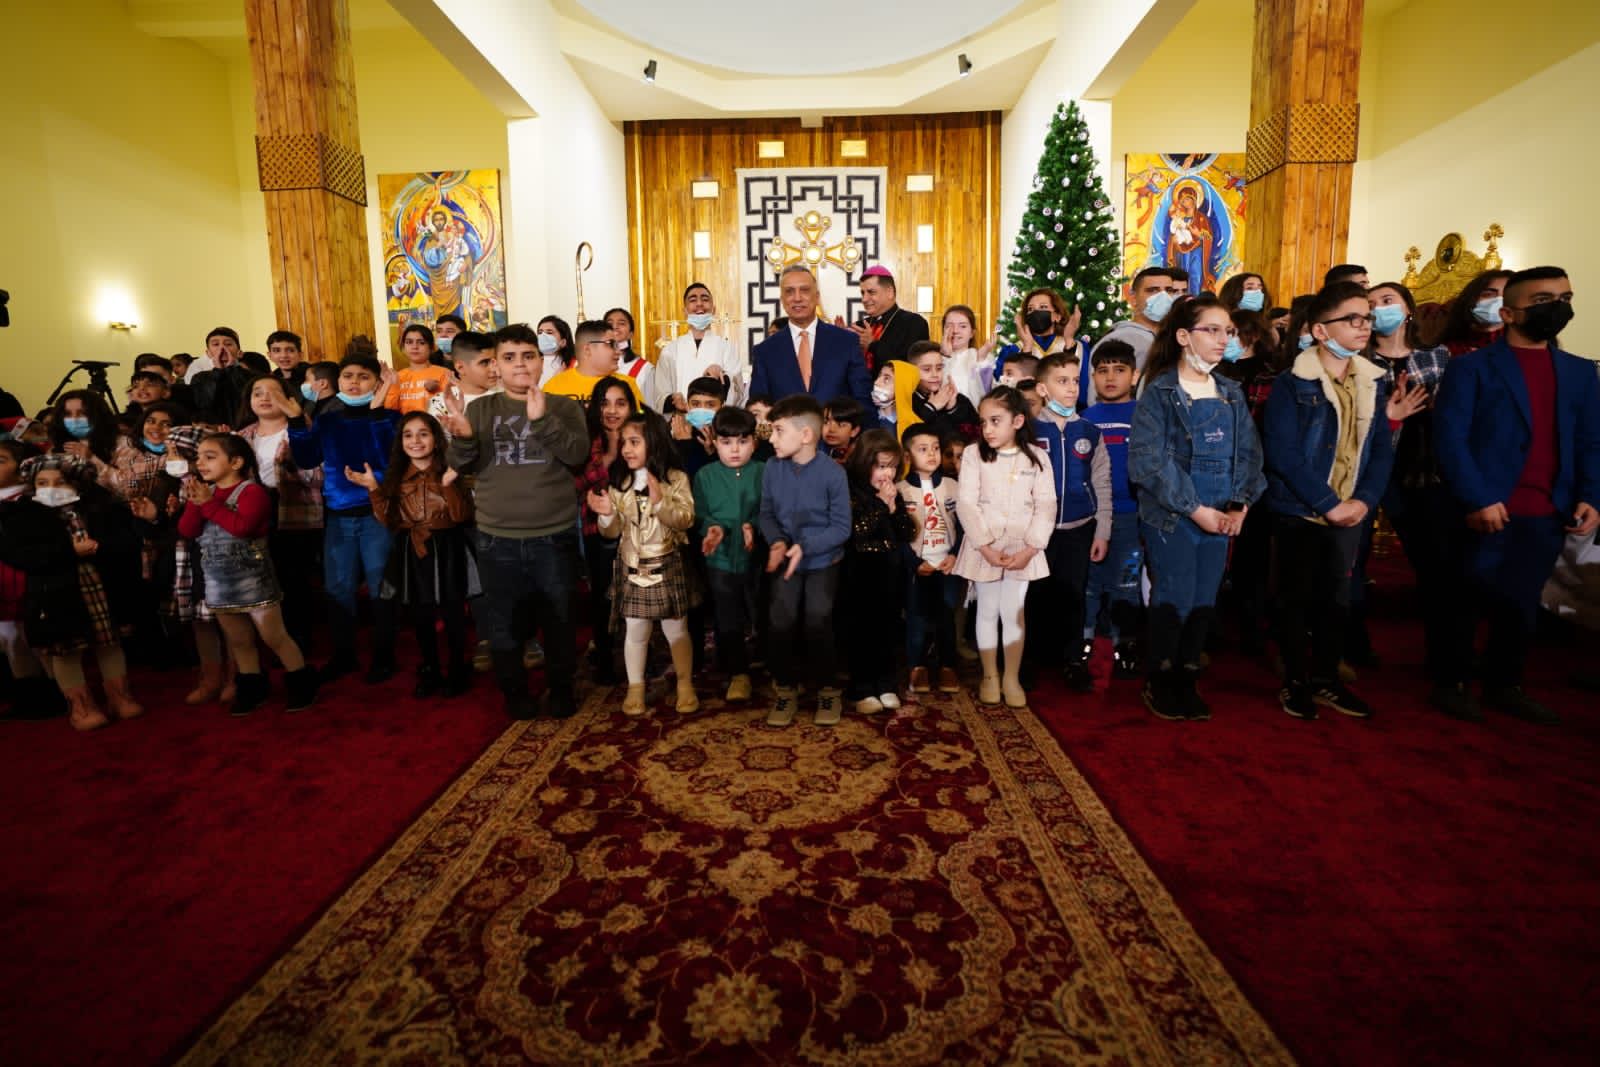 المسيحيون يحتفلون برفقة الرئيس باعياد الميلاد